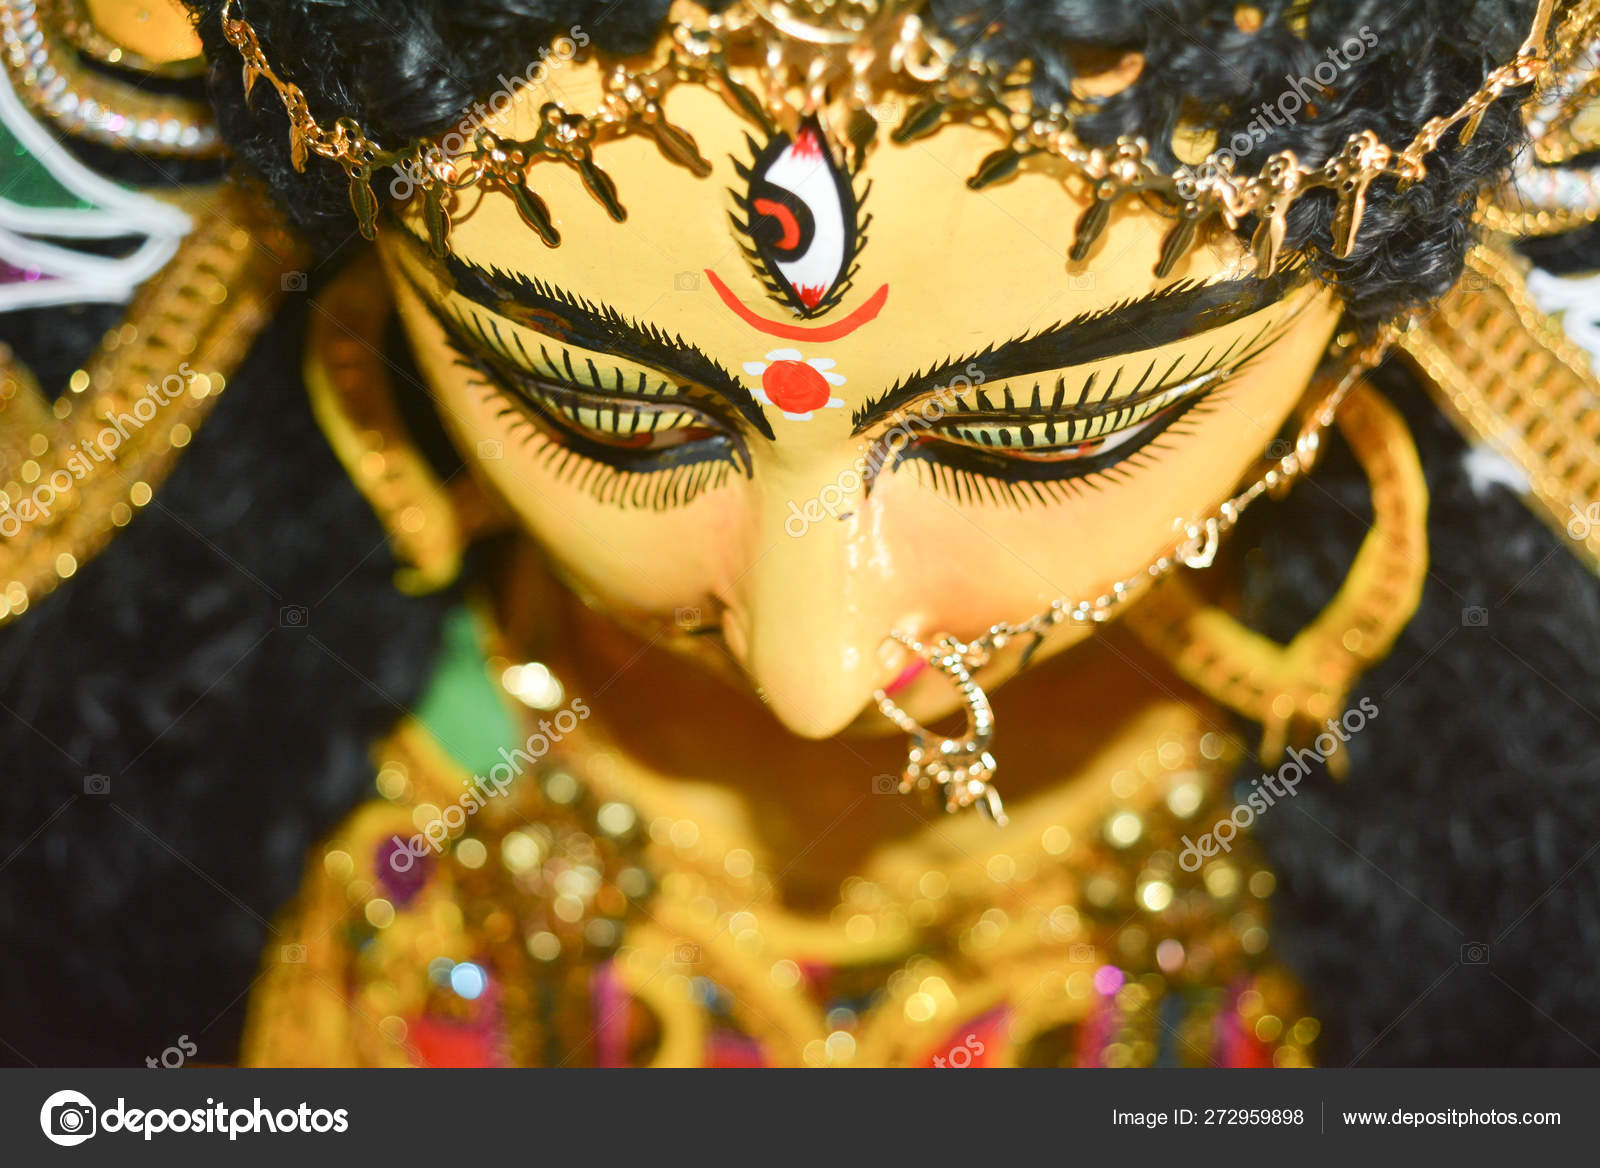 Durga maa Stock Photos, Royalty Free Durga maa Images | Depositphotos